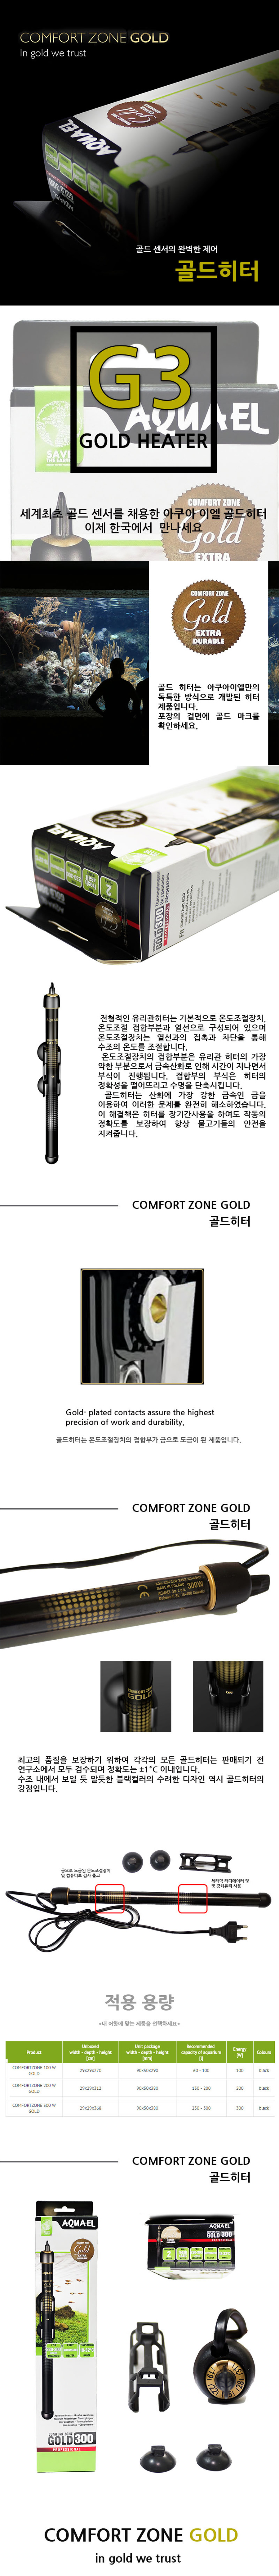 골드히터 300W (Aquael comfortzone gold) 40,000원 - 피알피쉬 펫샵, 관상어용품, 부속품, 히터 바보사랑 골드히터 300W (Aquael comfortzone gold) 40,000원 - 피알피쉬 펫샵, 관상어용품, 부속품, 히터 바보사랑